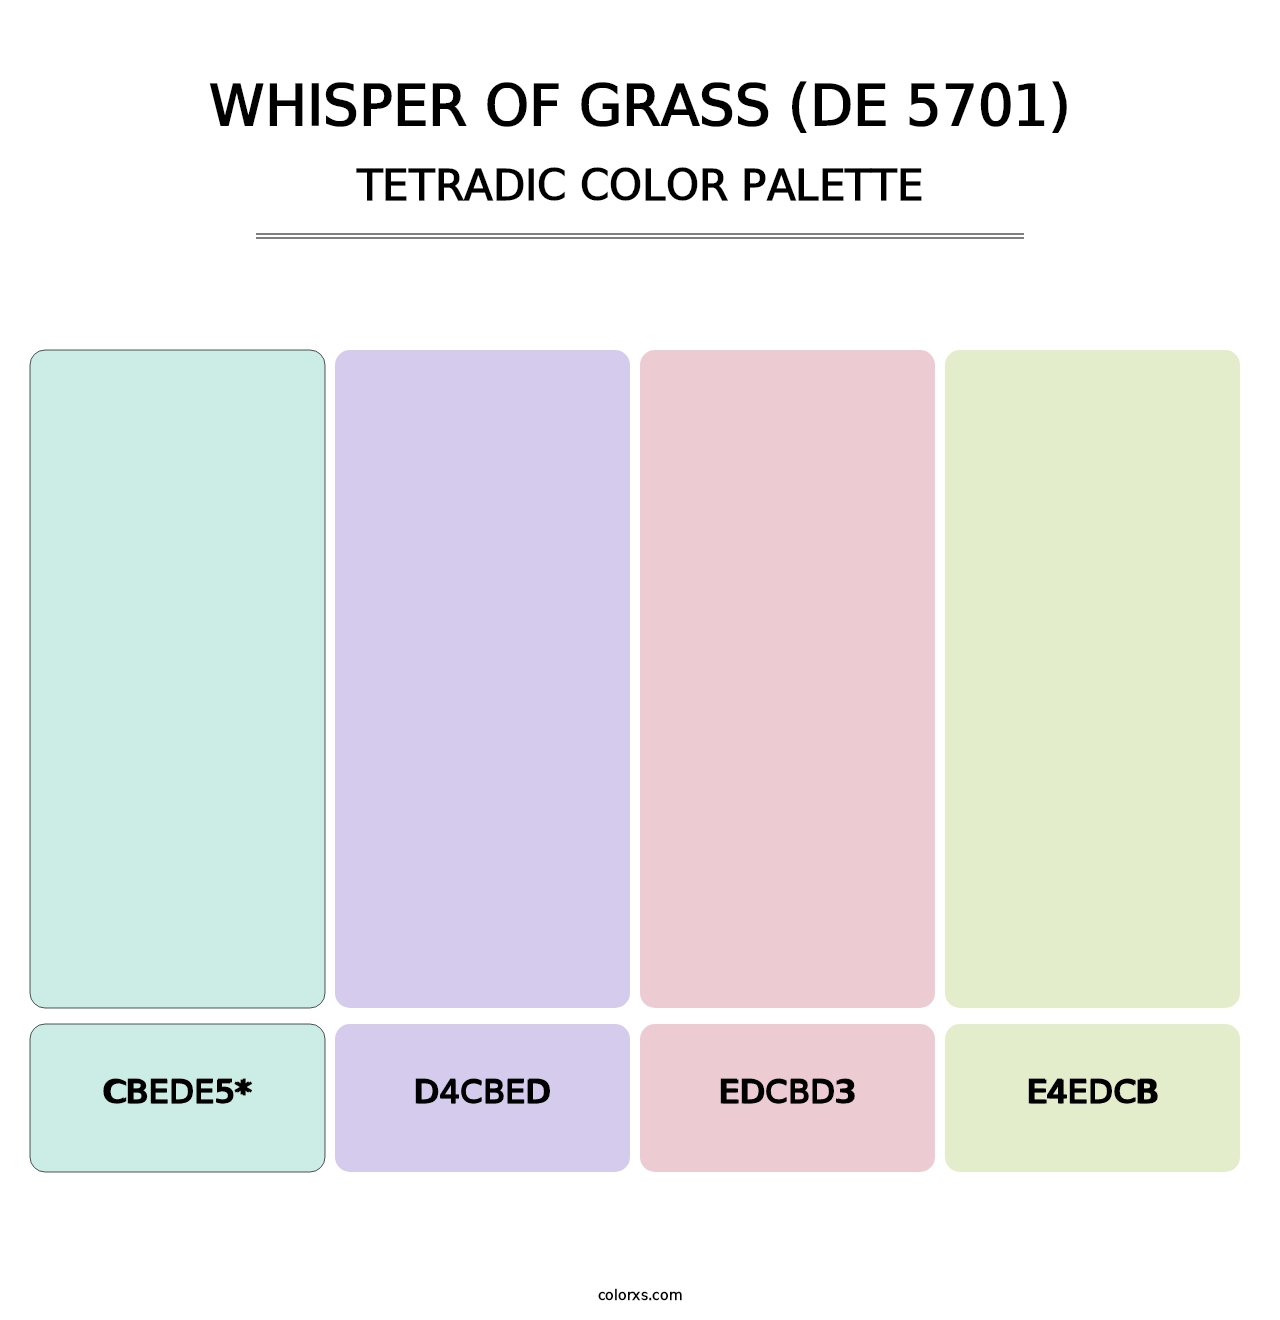 Whisper of Grass (DE 5701) - Tetradic Color Palette